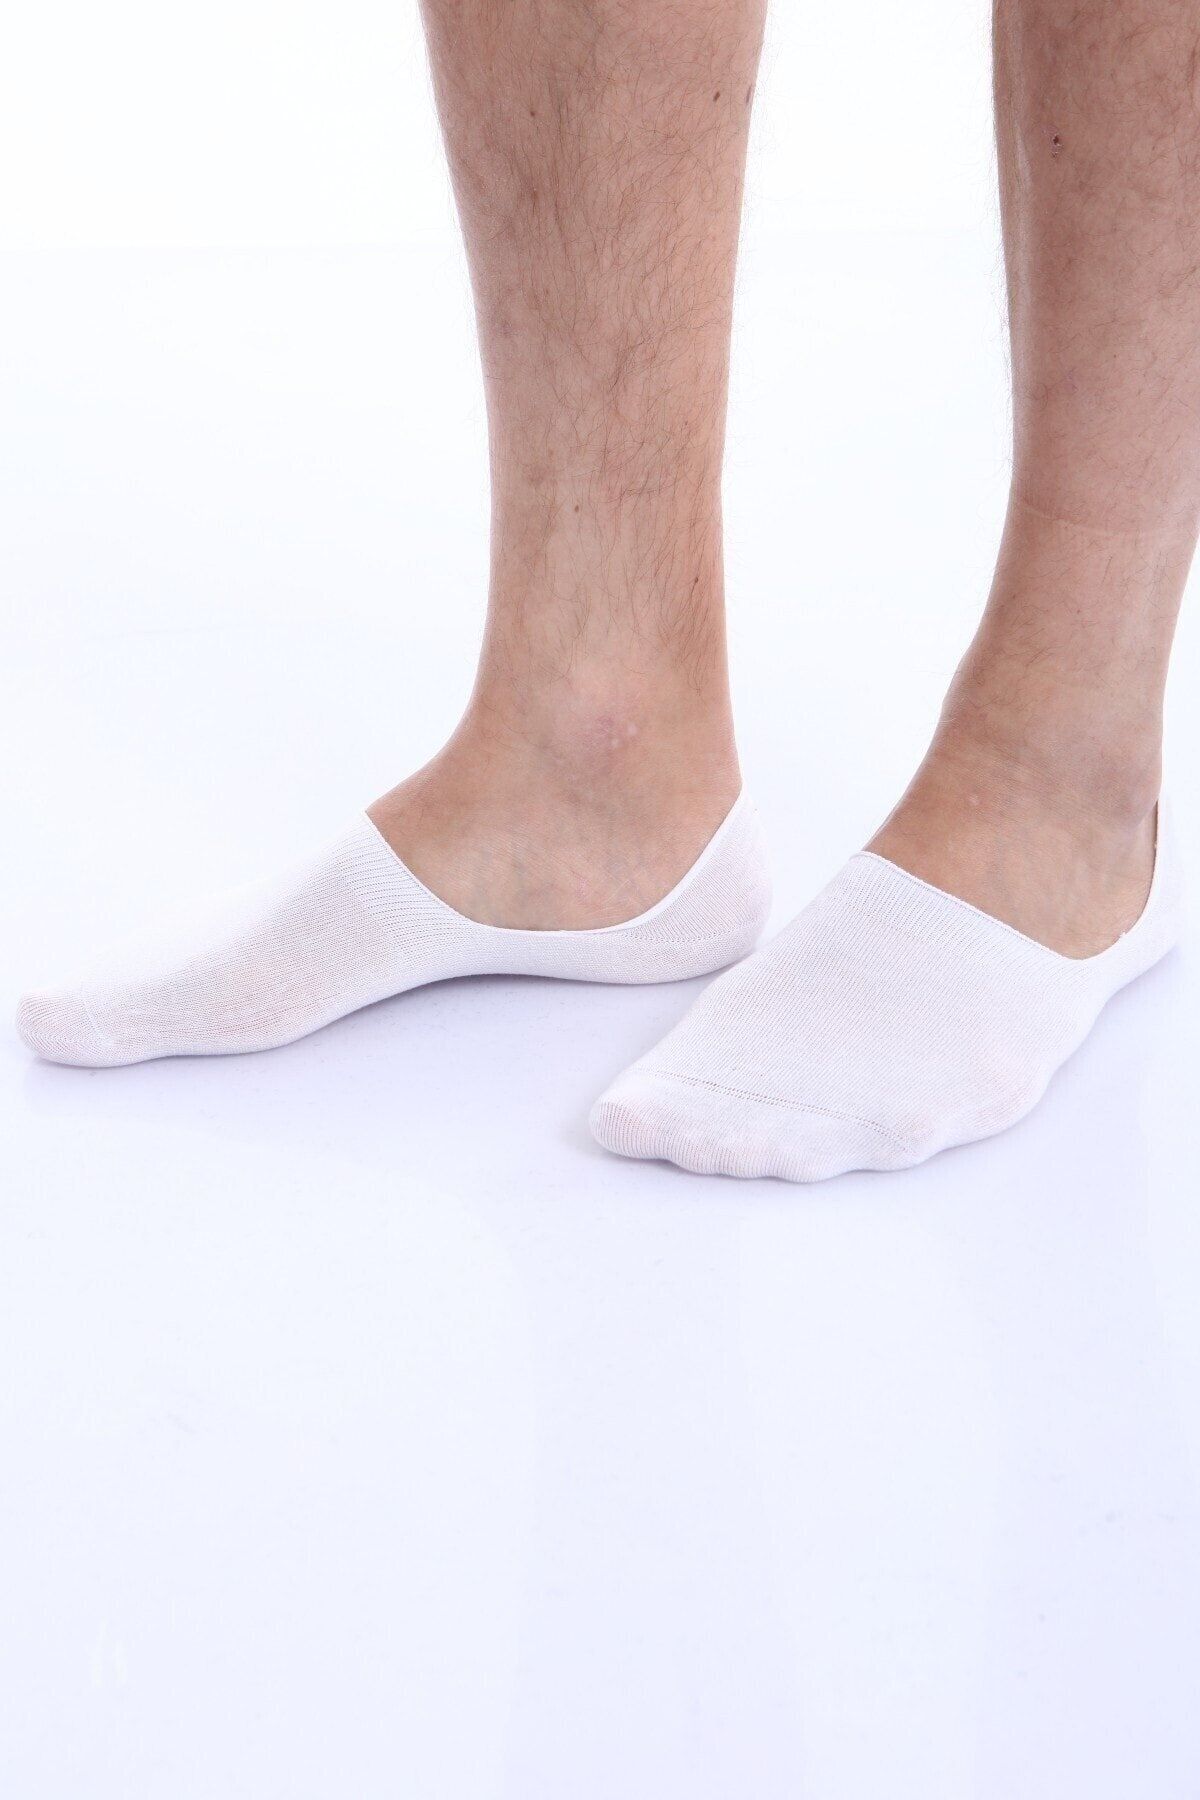 DORE Men's White Toe Seamless Non-Slip Silicone Modal Ballerina